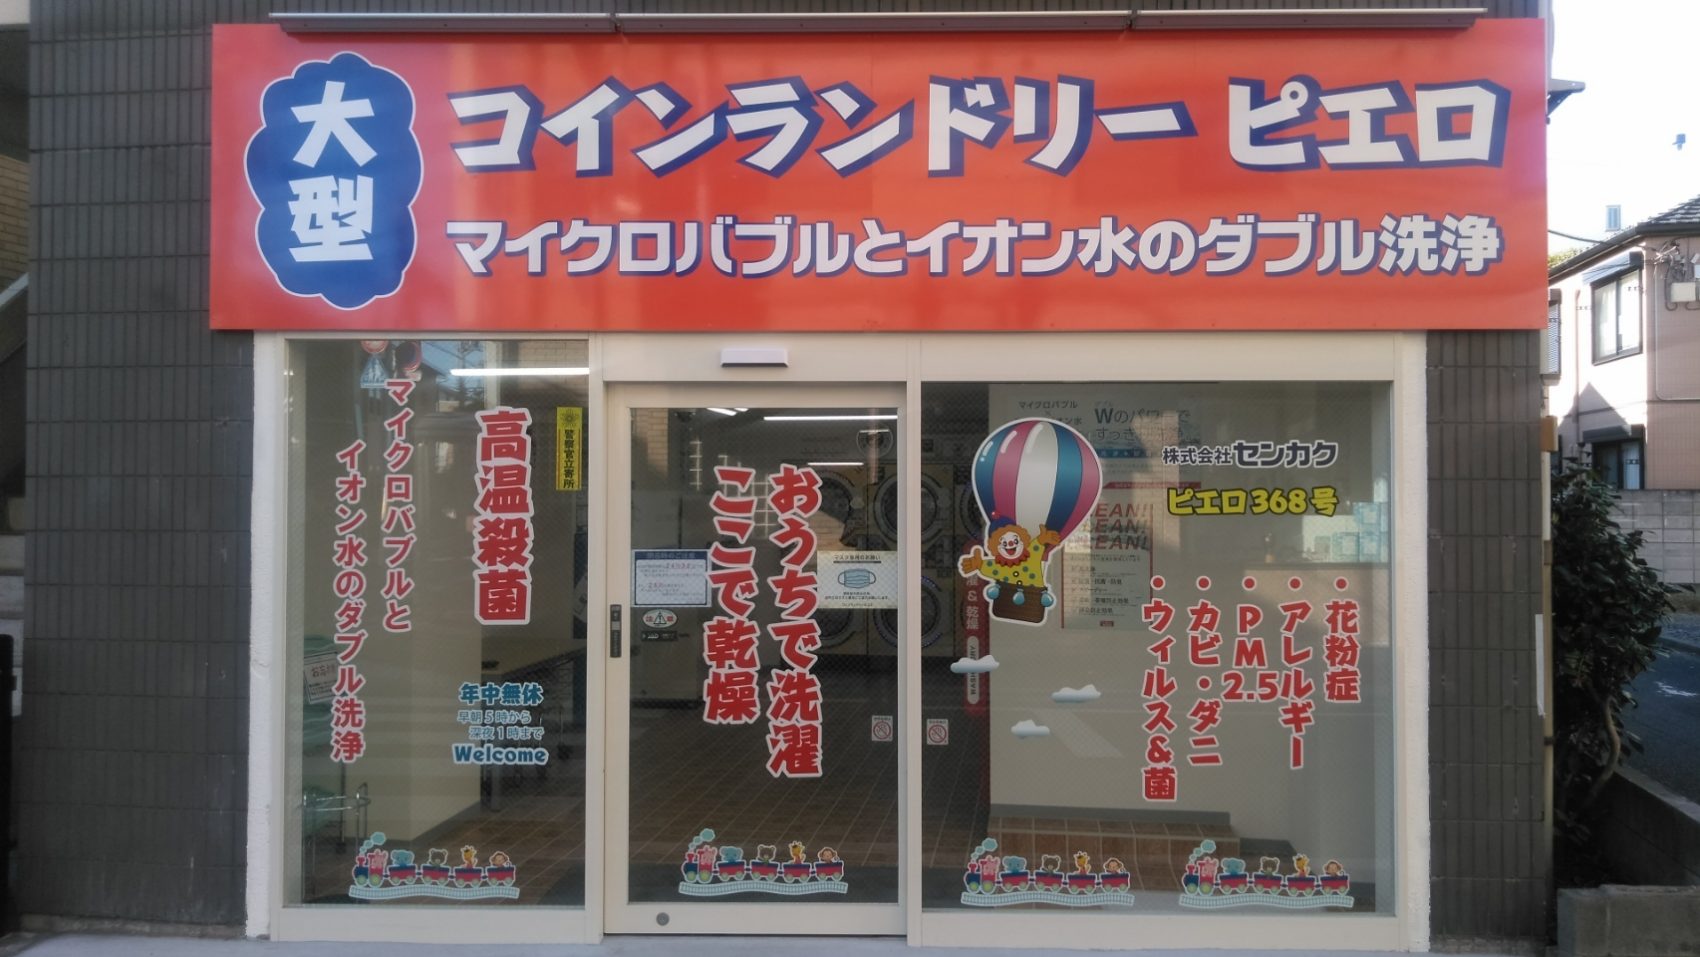 コインランドリーピエロ 368号 浜田山店の写真